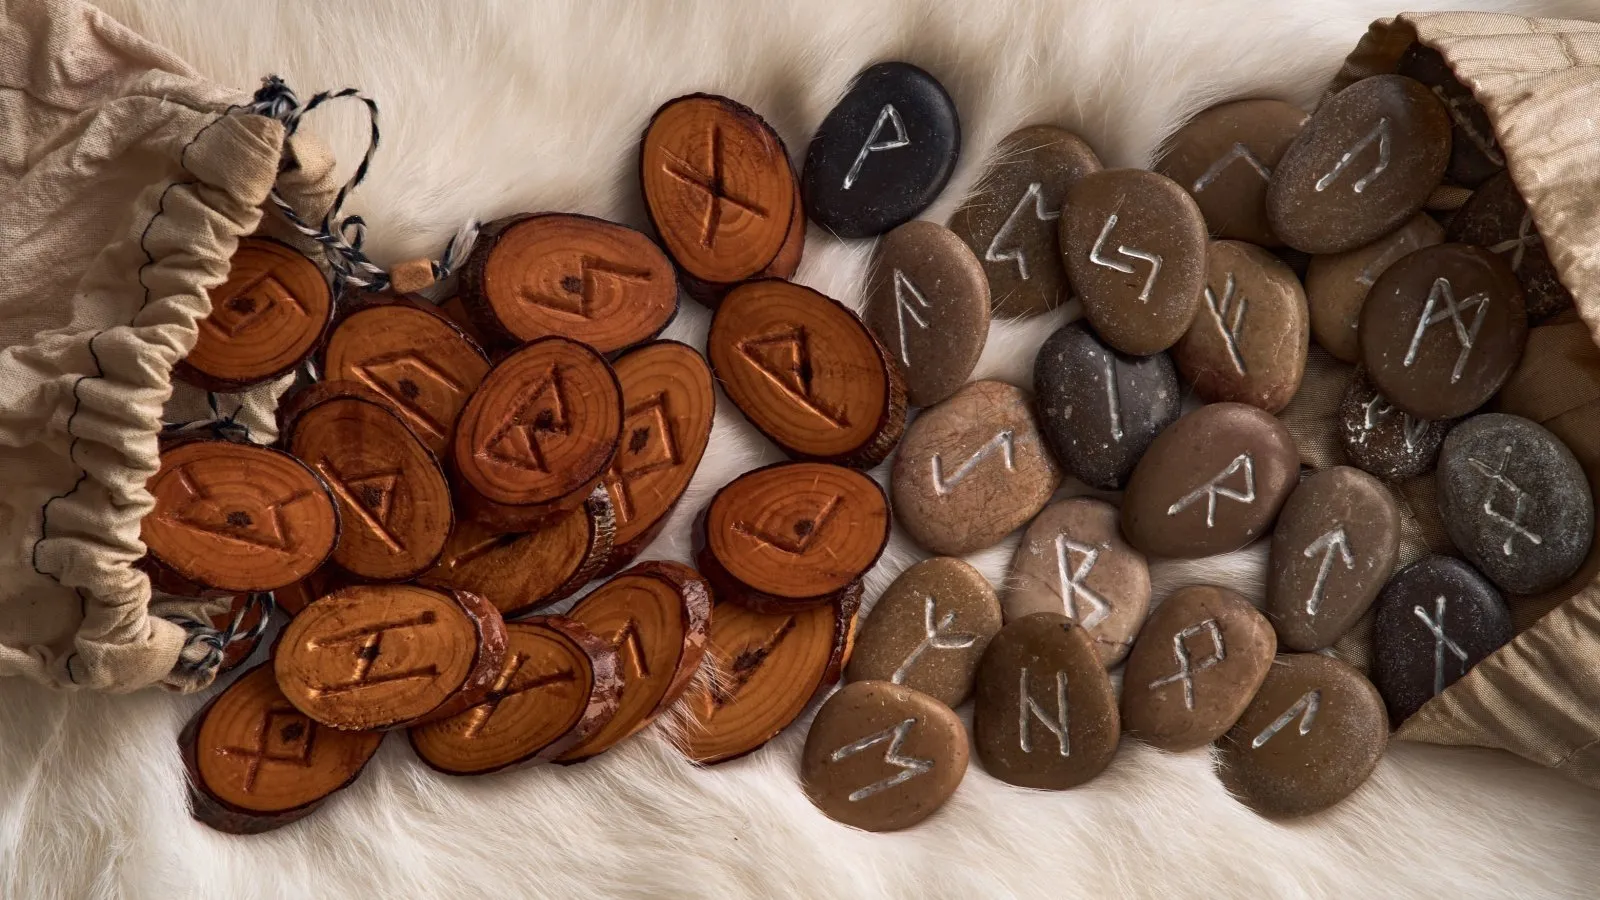 Handmade wooden and stone runes. Image: Shutterstock.